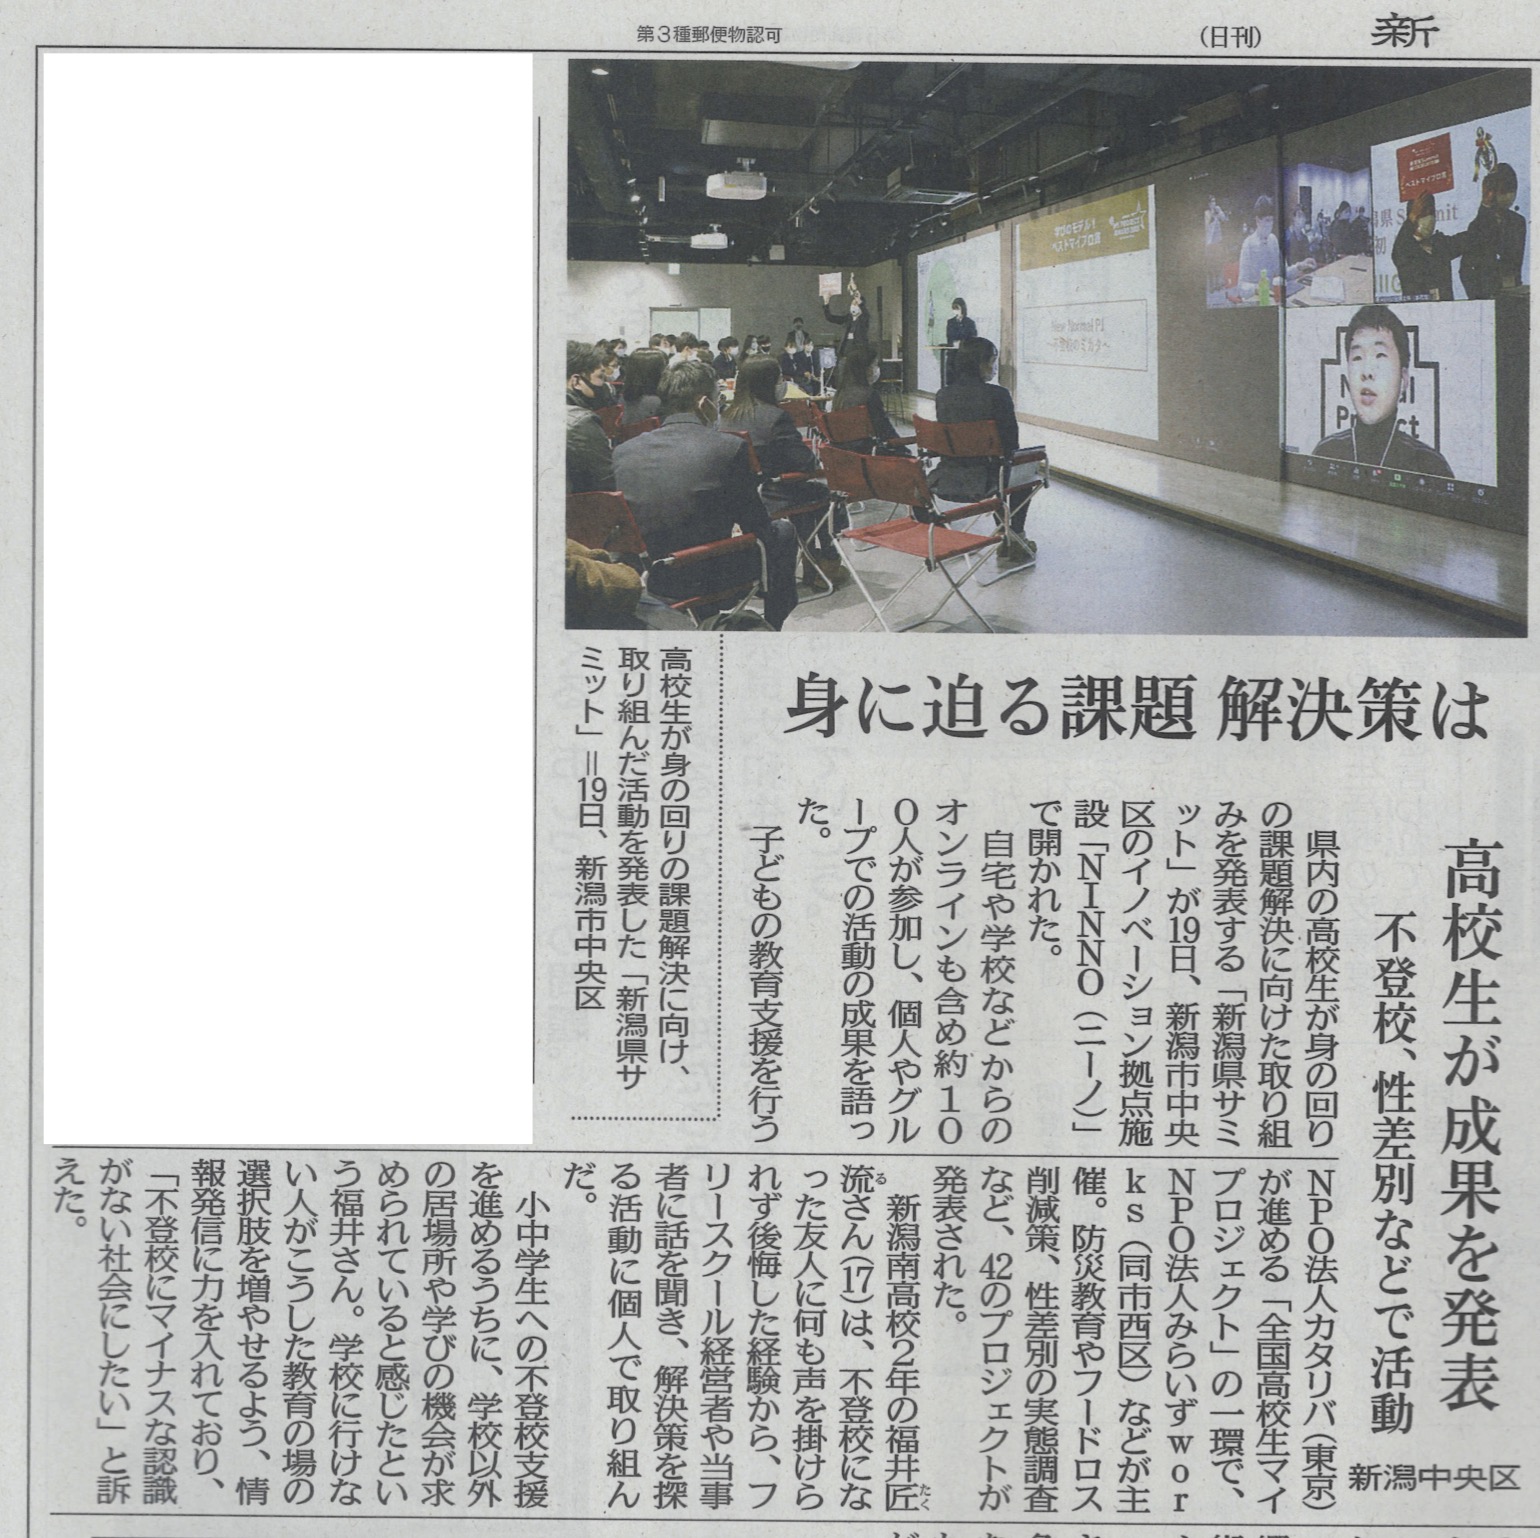 【メディア追加】全国高校生マイプロジェクト新潟県サミットを新潟日報様にご取材いただきました！